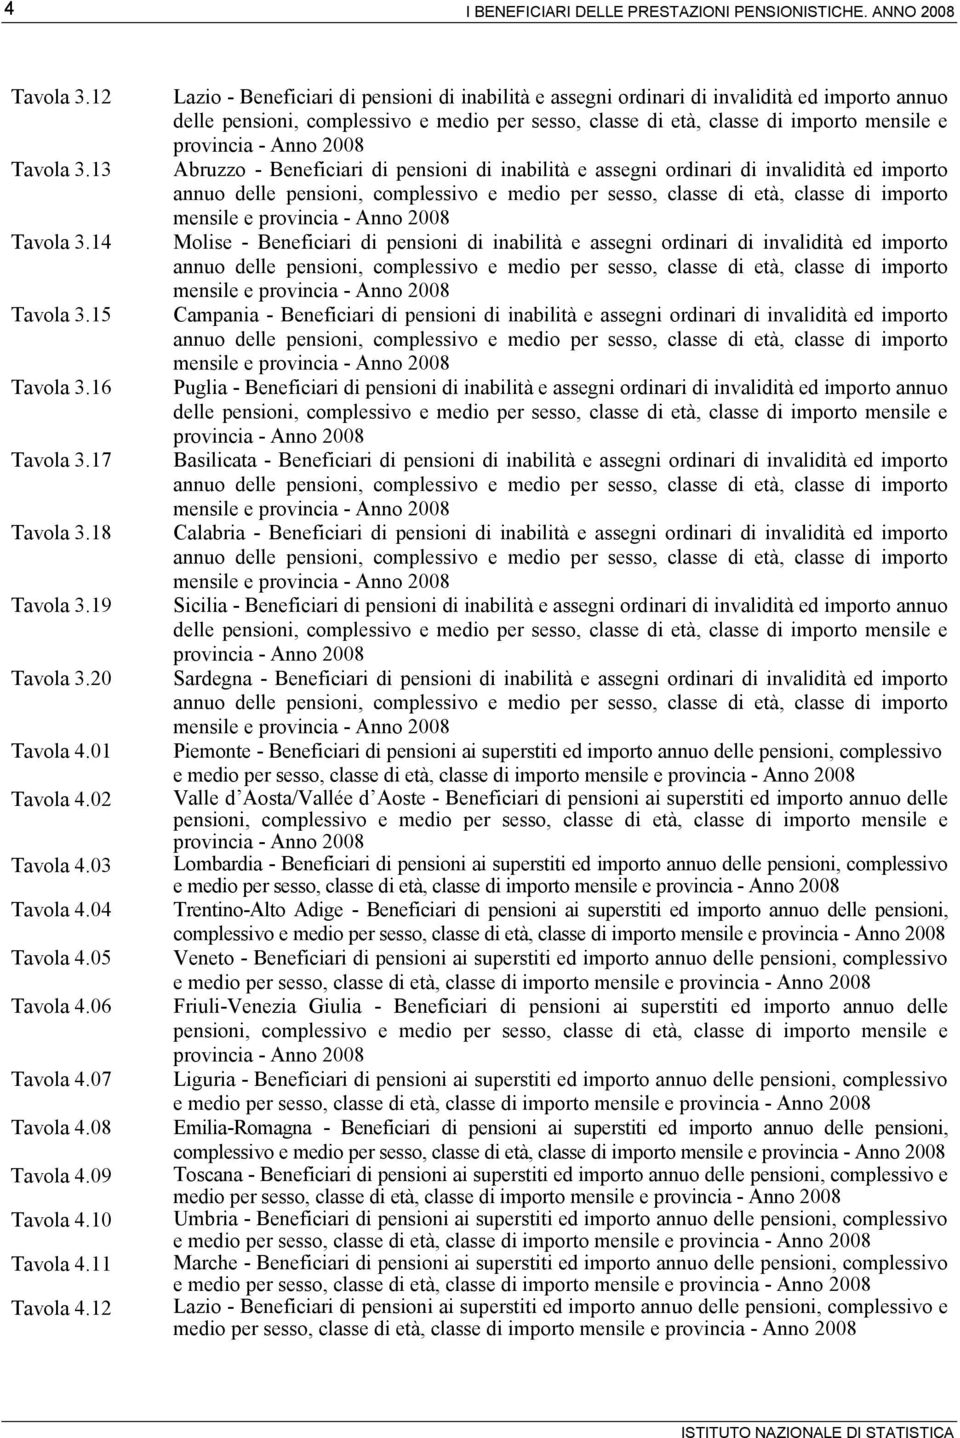 12 Lazio - Beneficiari di pensioni di inabilità e assegni ordinari di invalidità ed importo annuo delle Abruzzo - Beneficiari di pensioni di inabilità e assegni ordinari di invalidità ed importo